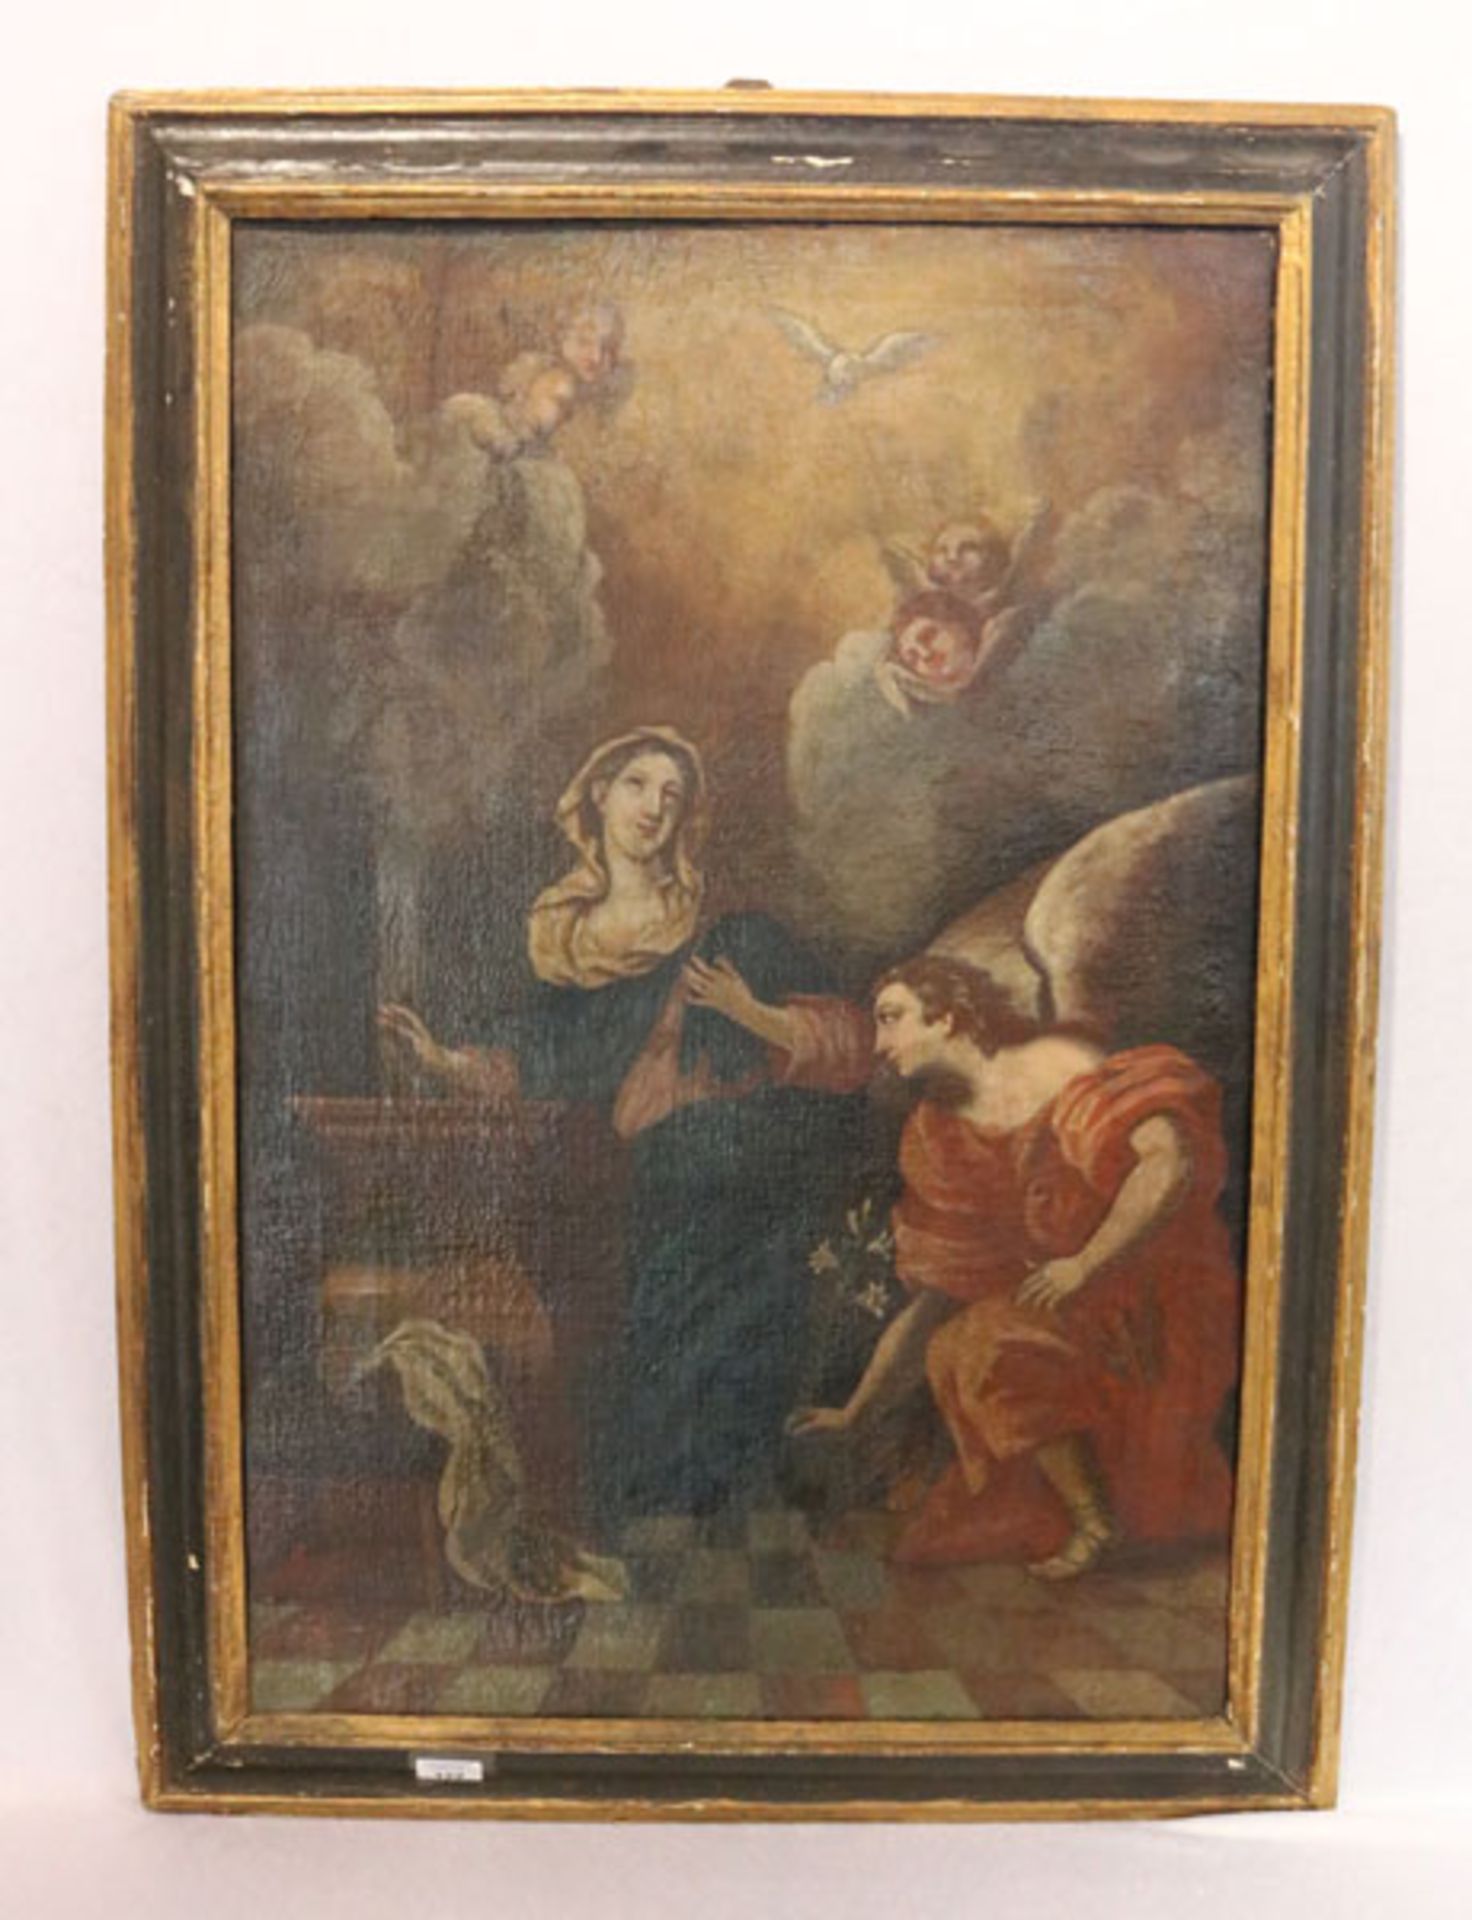 Gemälde ÖL/LW 'Mariadarstellung mit Putten', 18. Jahrhundert, LW doubliert, Altersspuren, gerahmt,